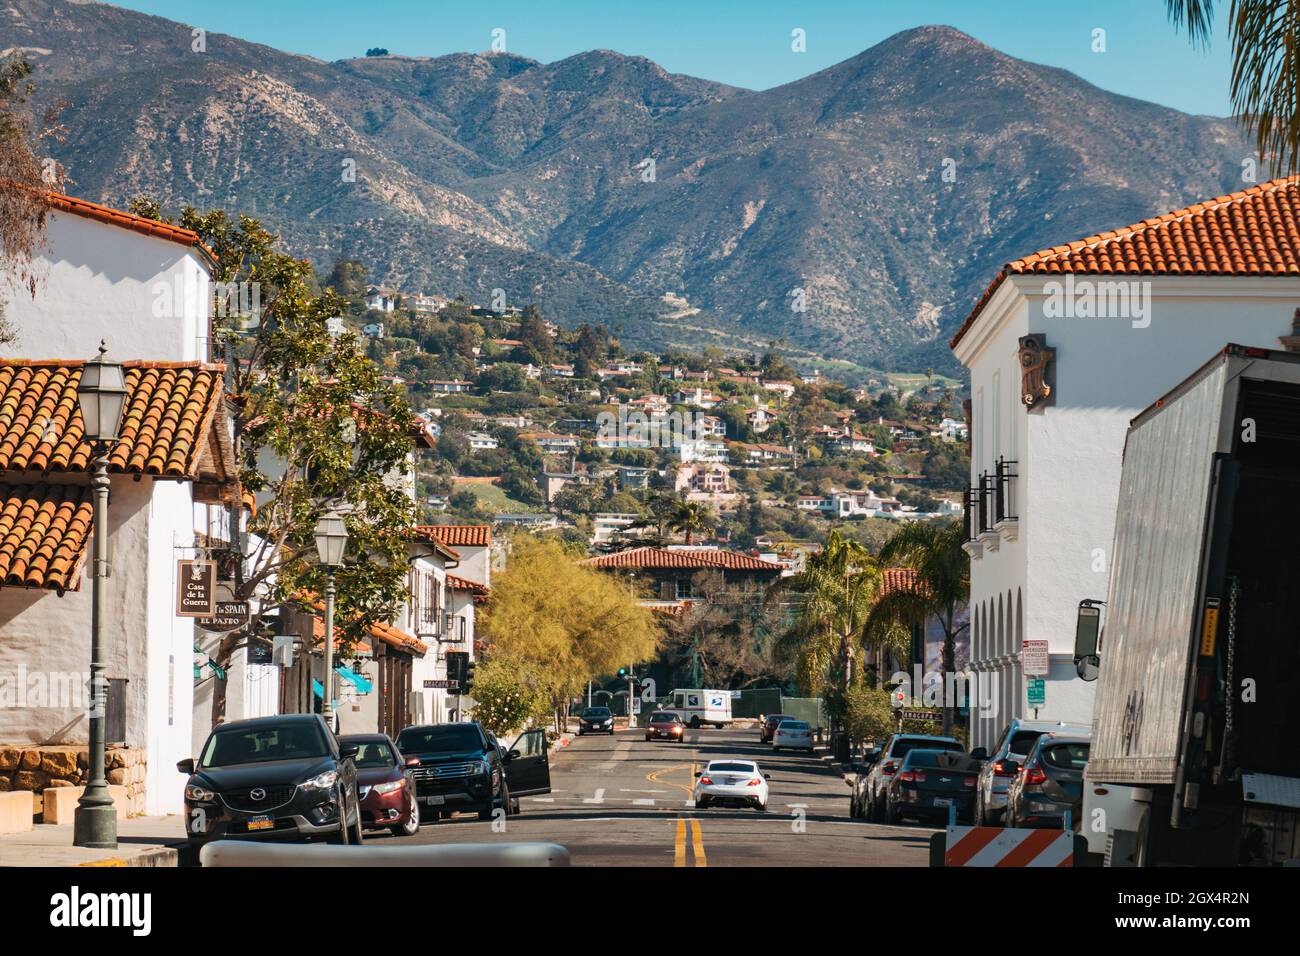 Vue sur une rue entre des bâtiments de style colonial espagnol avec des murs blancs lisses et des toits de tuiles rouges à Santa Barbara, Californie, États-Unis Banque D'Images